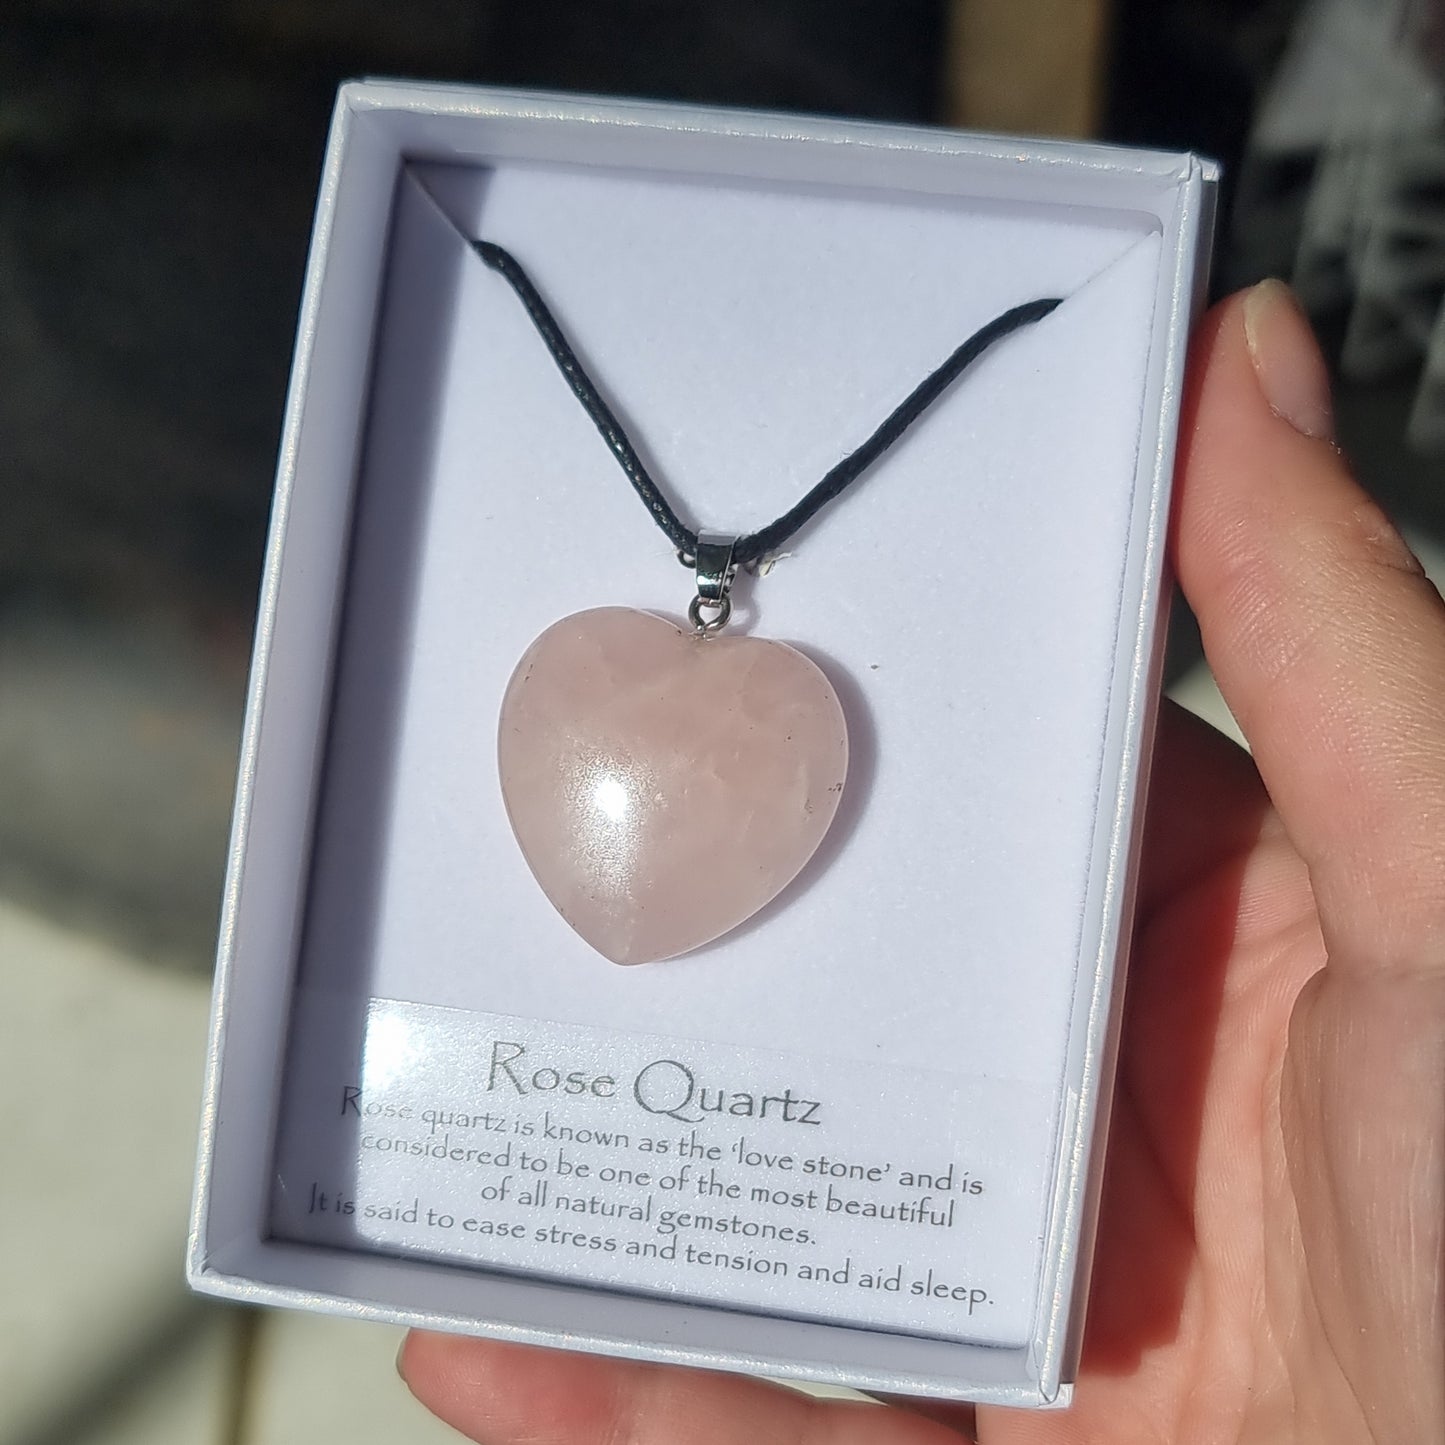 Rose quartz heart pendant - Rivendell Shop